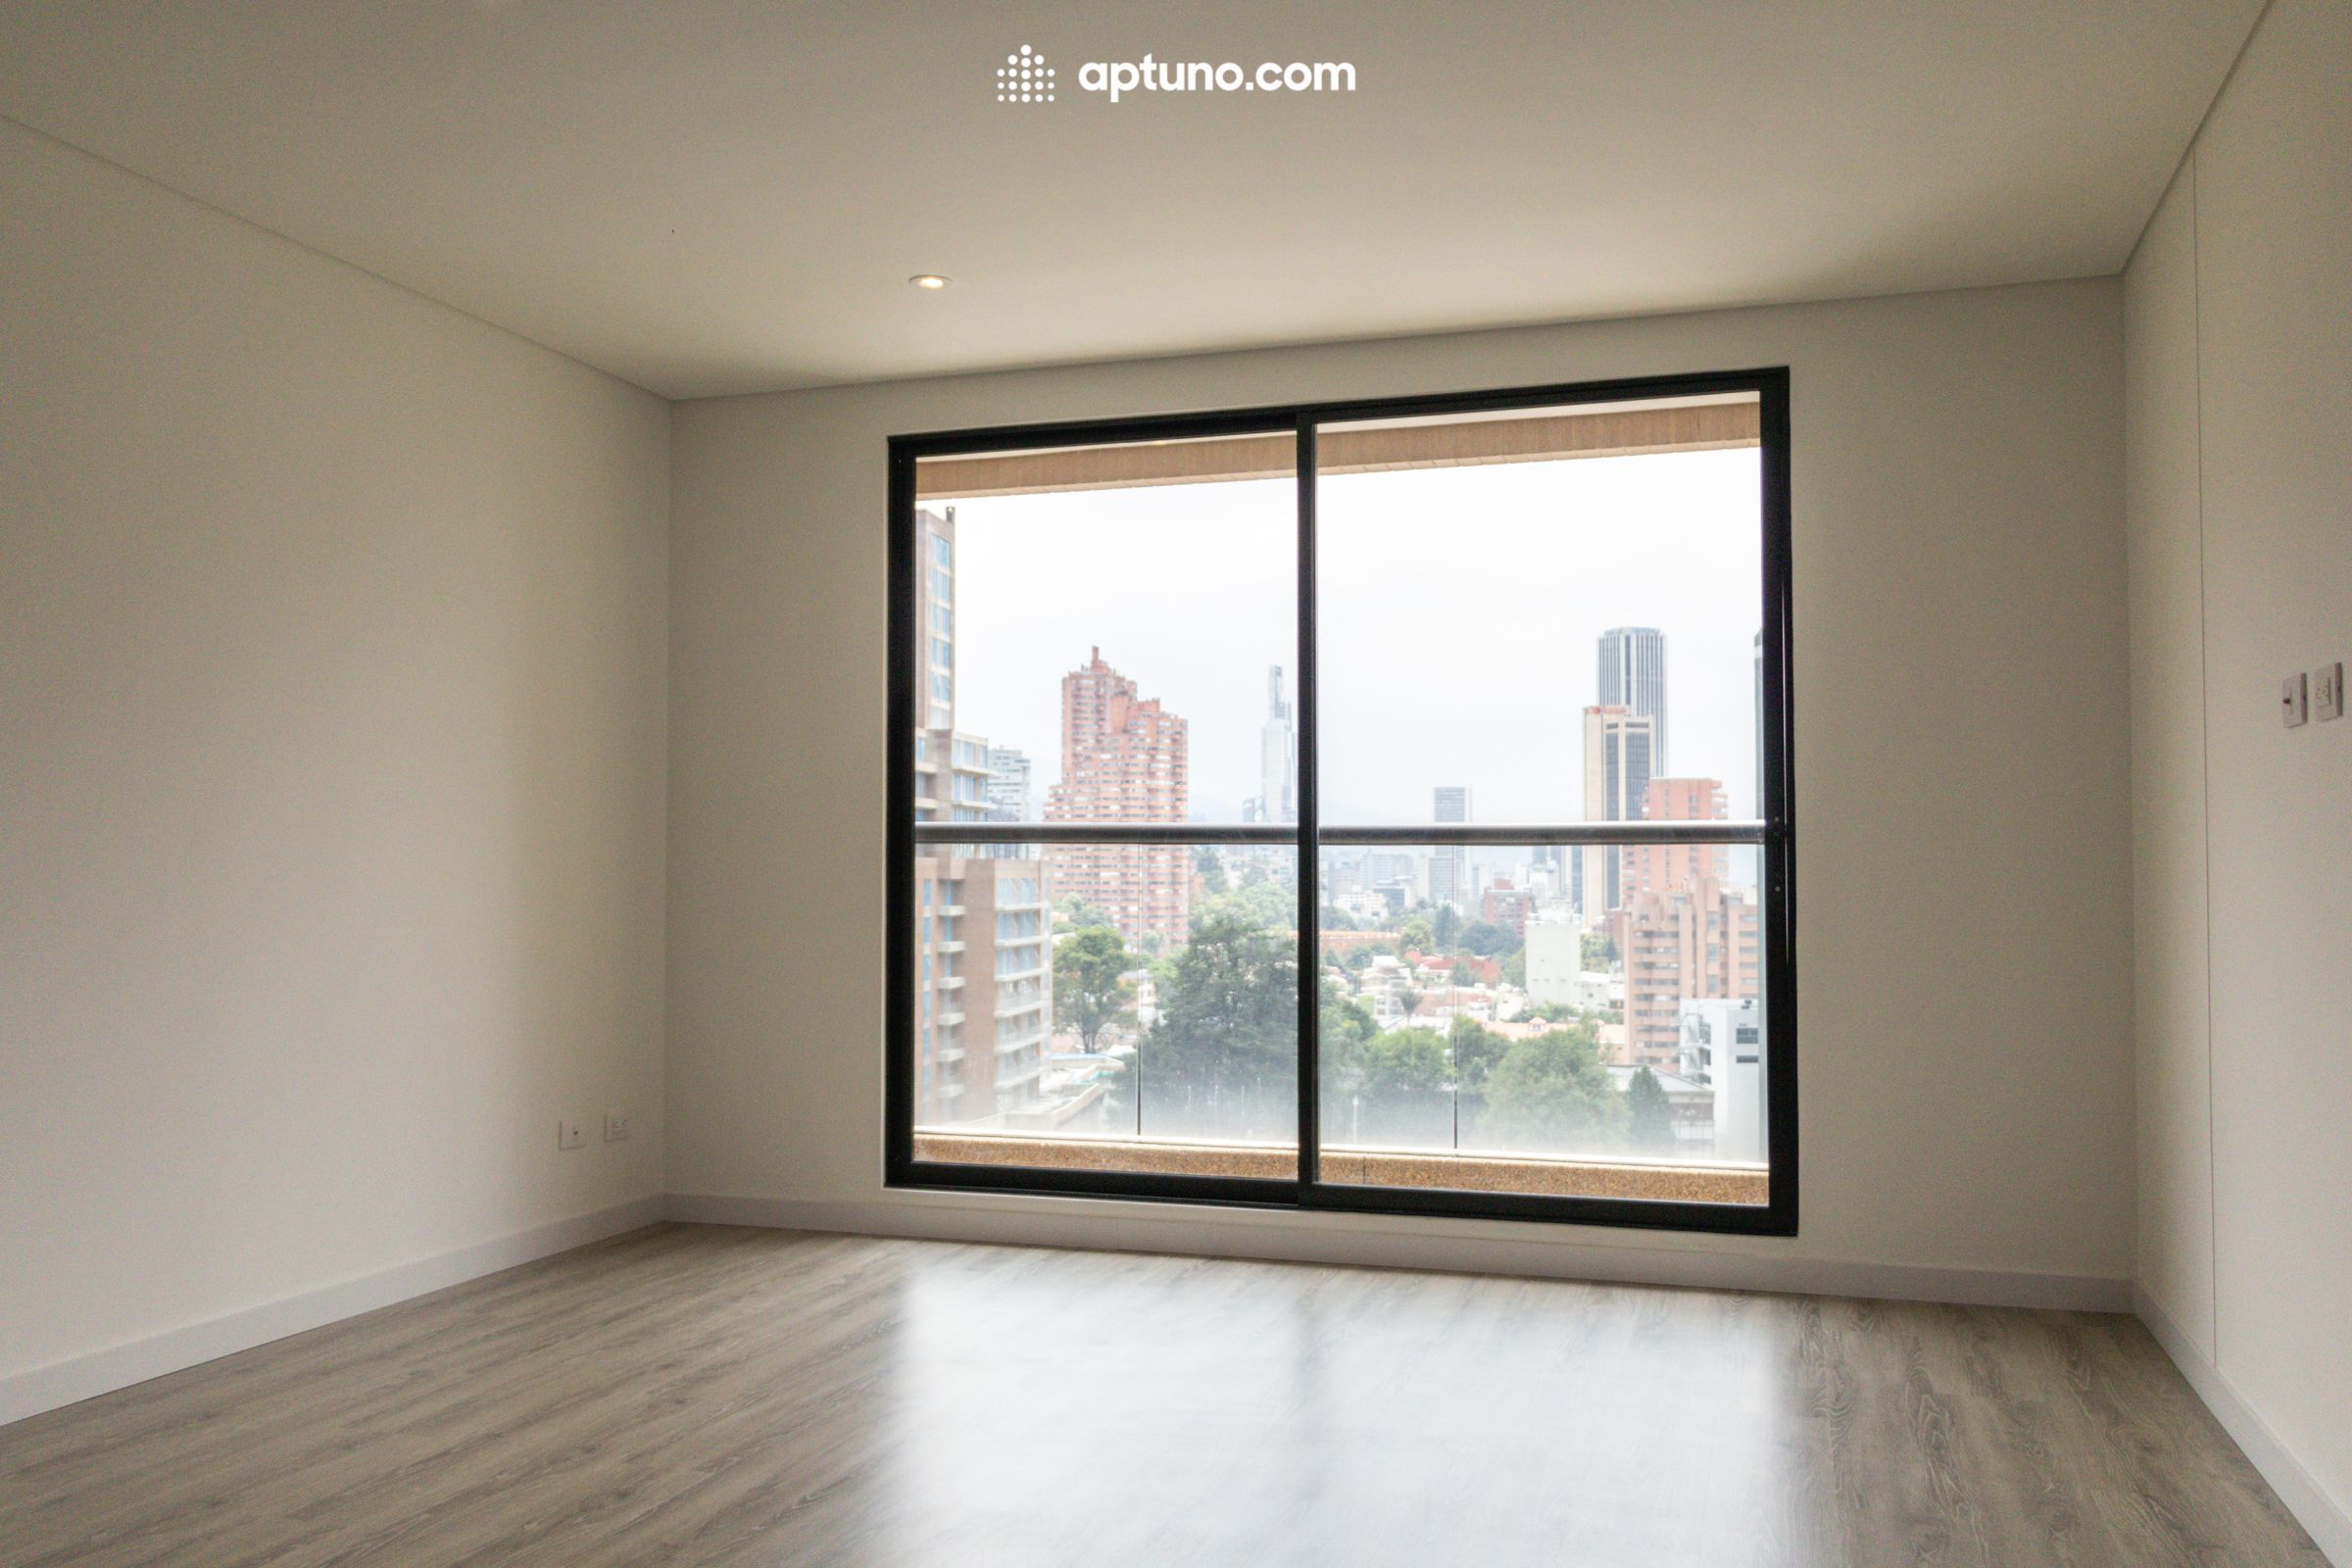 Apartamento en arriendo San Martín 34 m² - $ 1.500.000